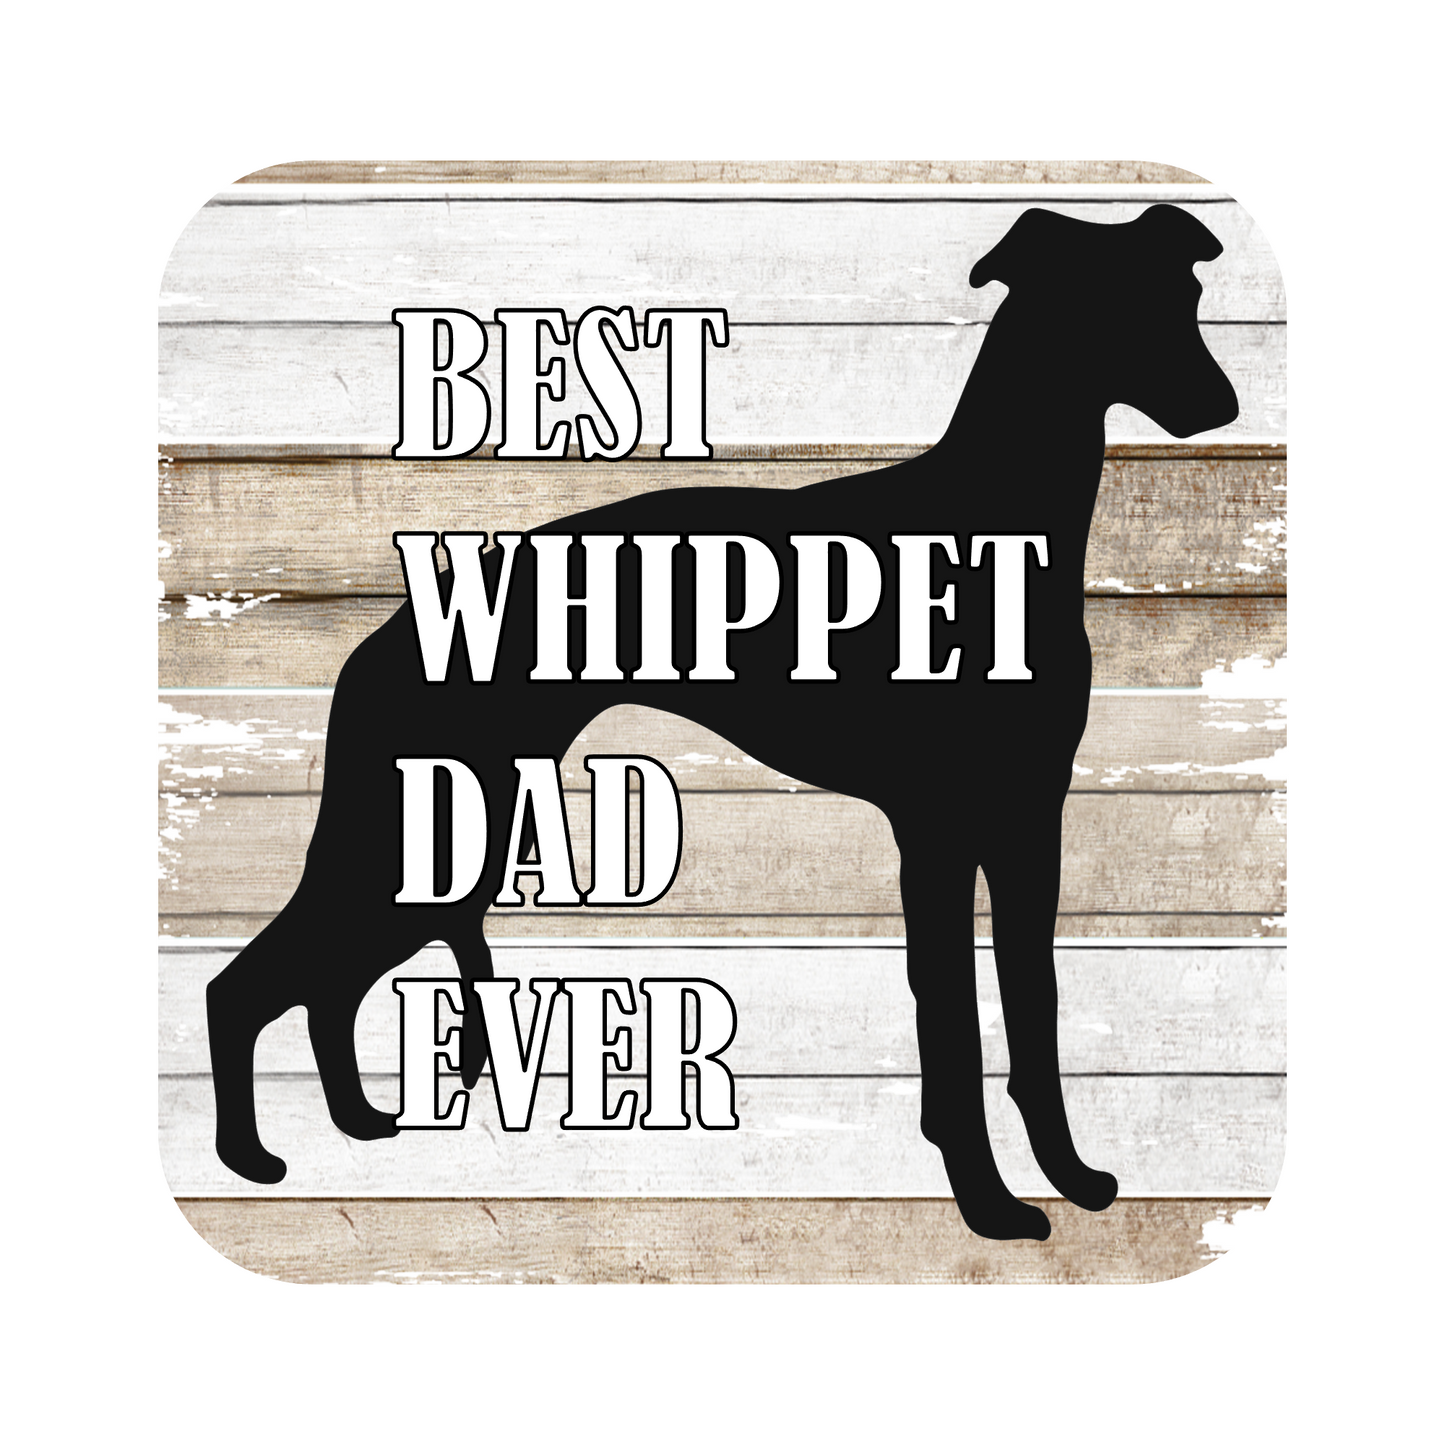 Best Whippet Dad Ever Fridge Magnet